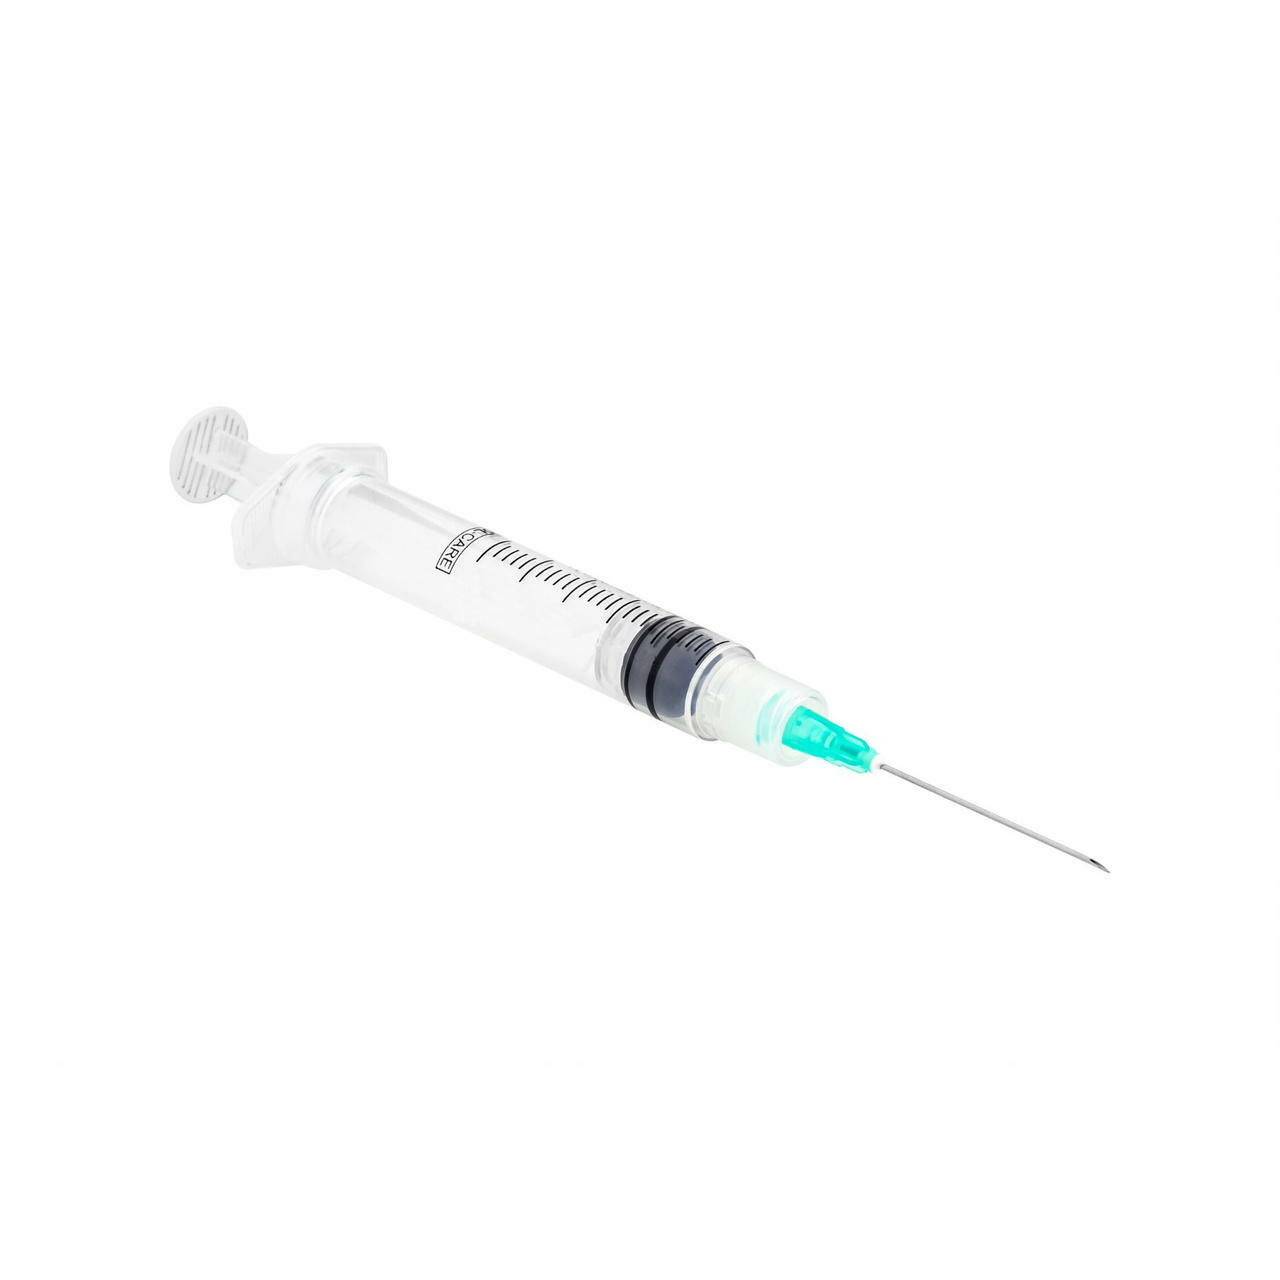 20ml 21g 1.5 inch Sol-Care Luer Lock Safety Syringe and Needle - UKMEDI